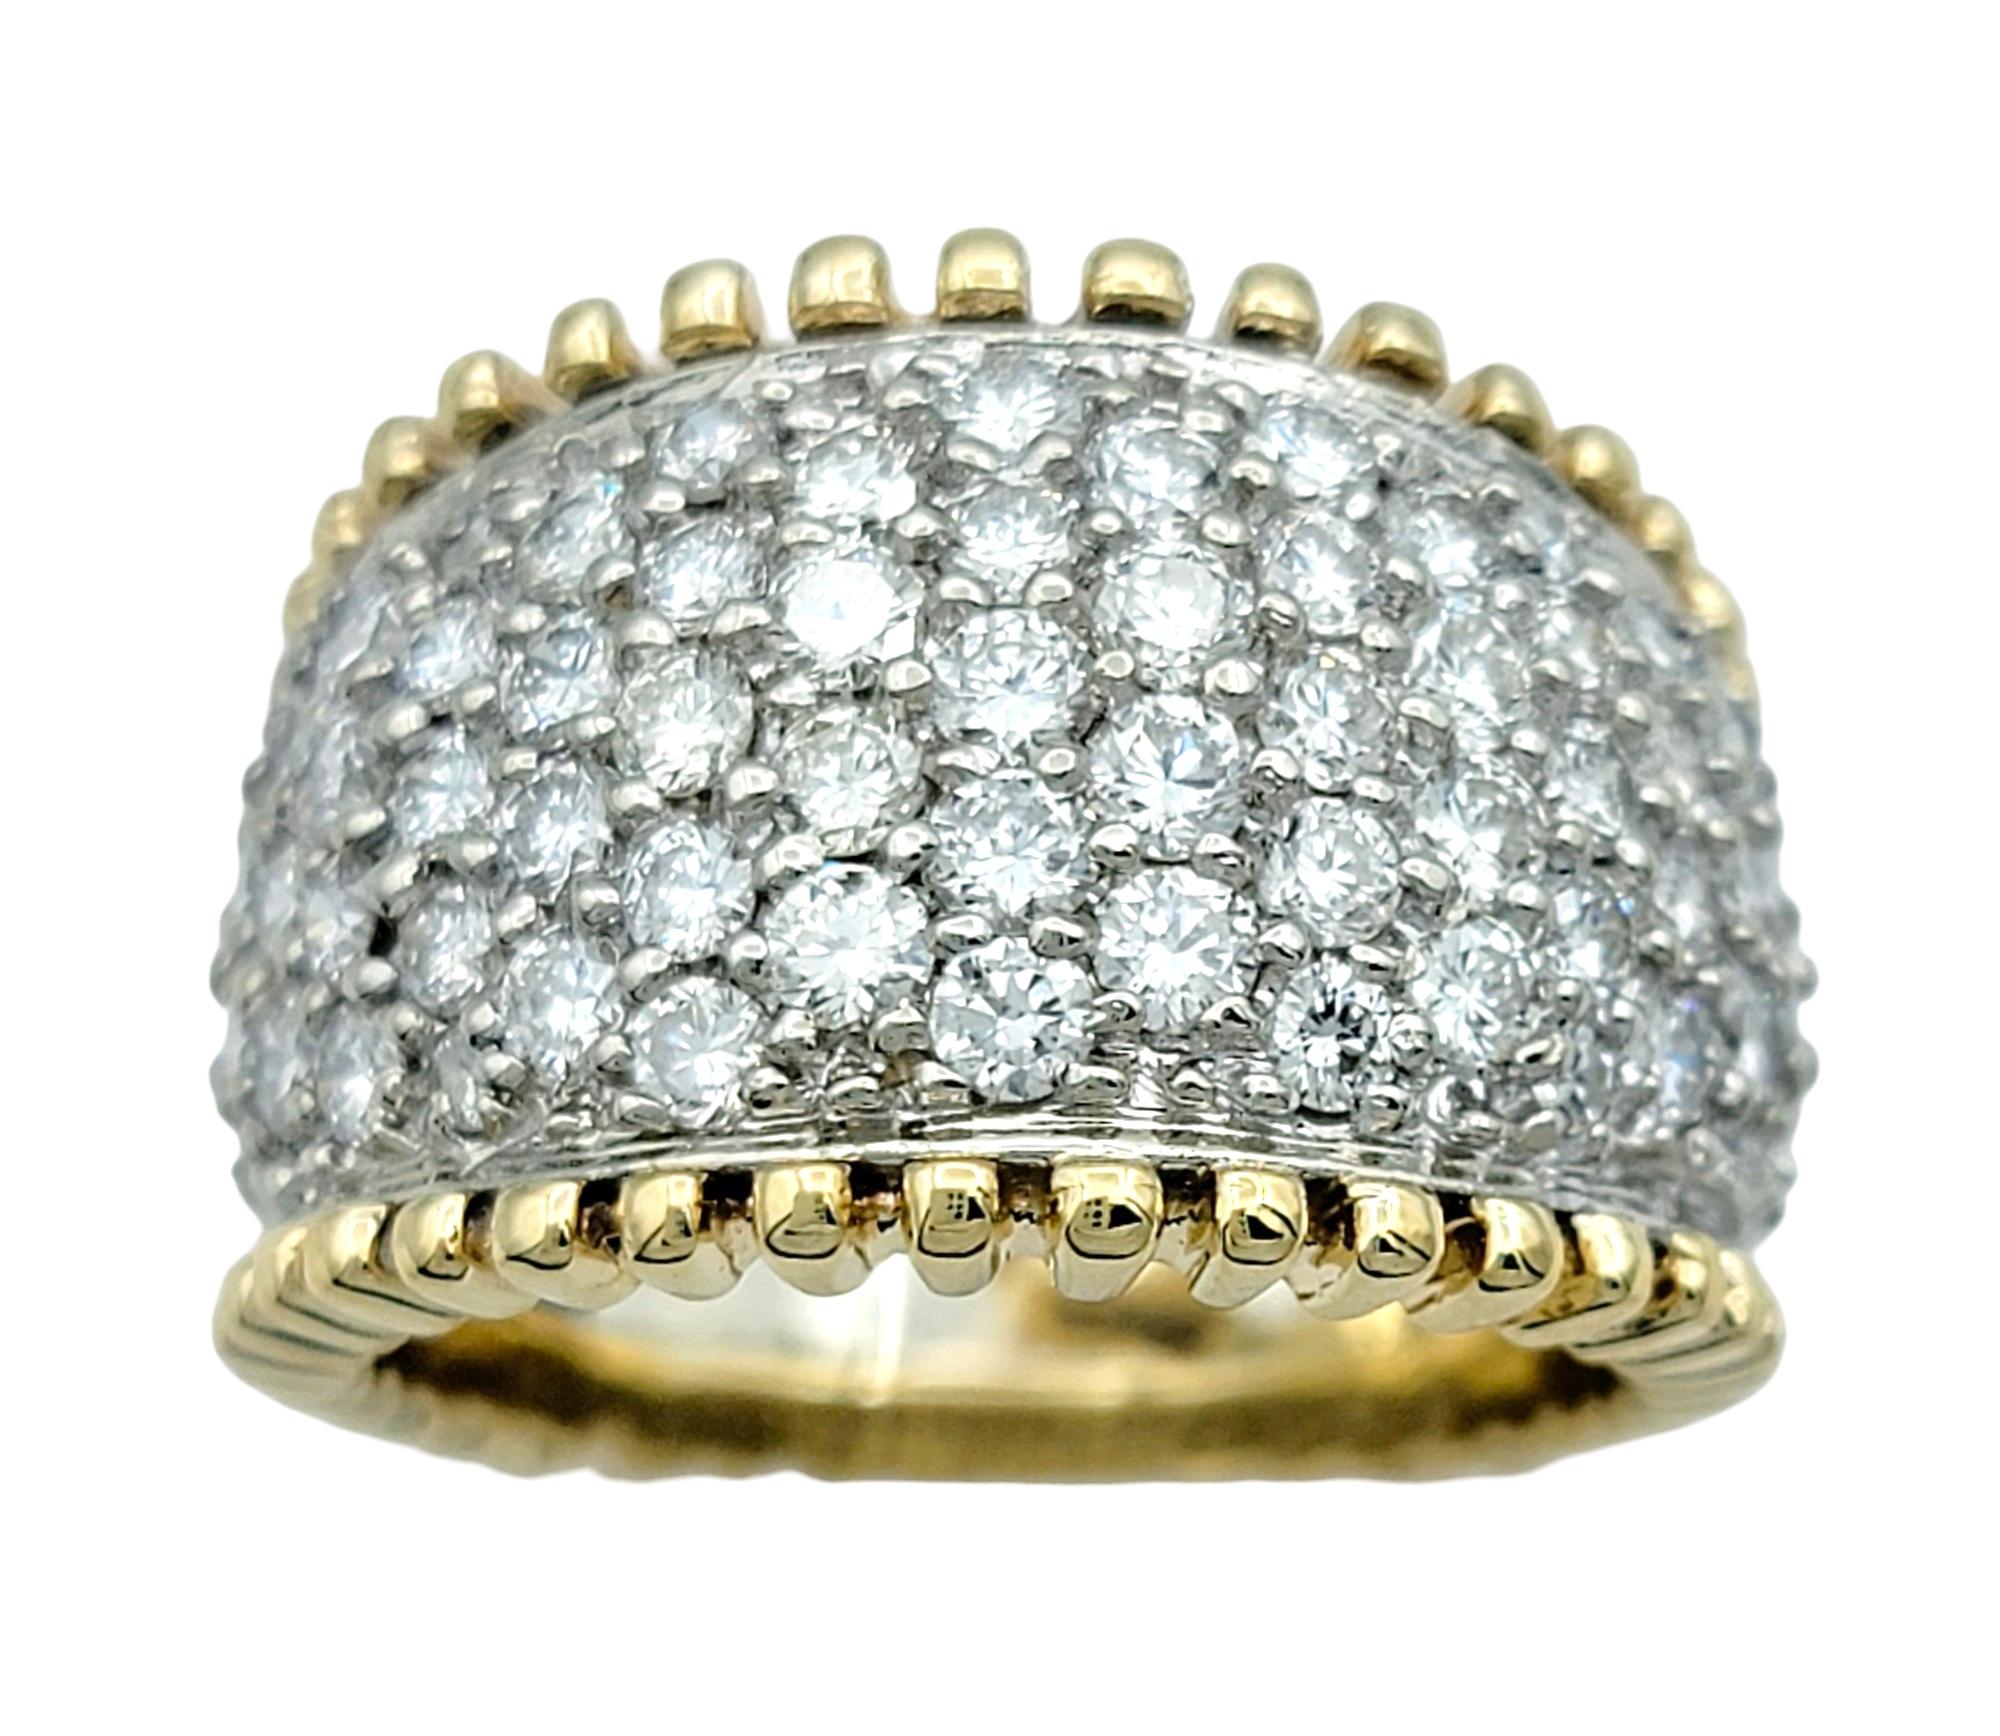 Ringgröße: 7

Dieser atemberaubende Diamant-Cluster-Kuppelring strahlt mit seinem komplizierten Design und den kontrastierenden Metallen Eleganz aus. In 14 Karat Weißgold gefasst, bilden die schillernden Diamanten in der Mitte des Rings einen